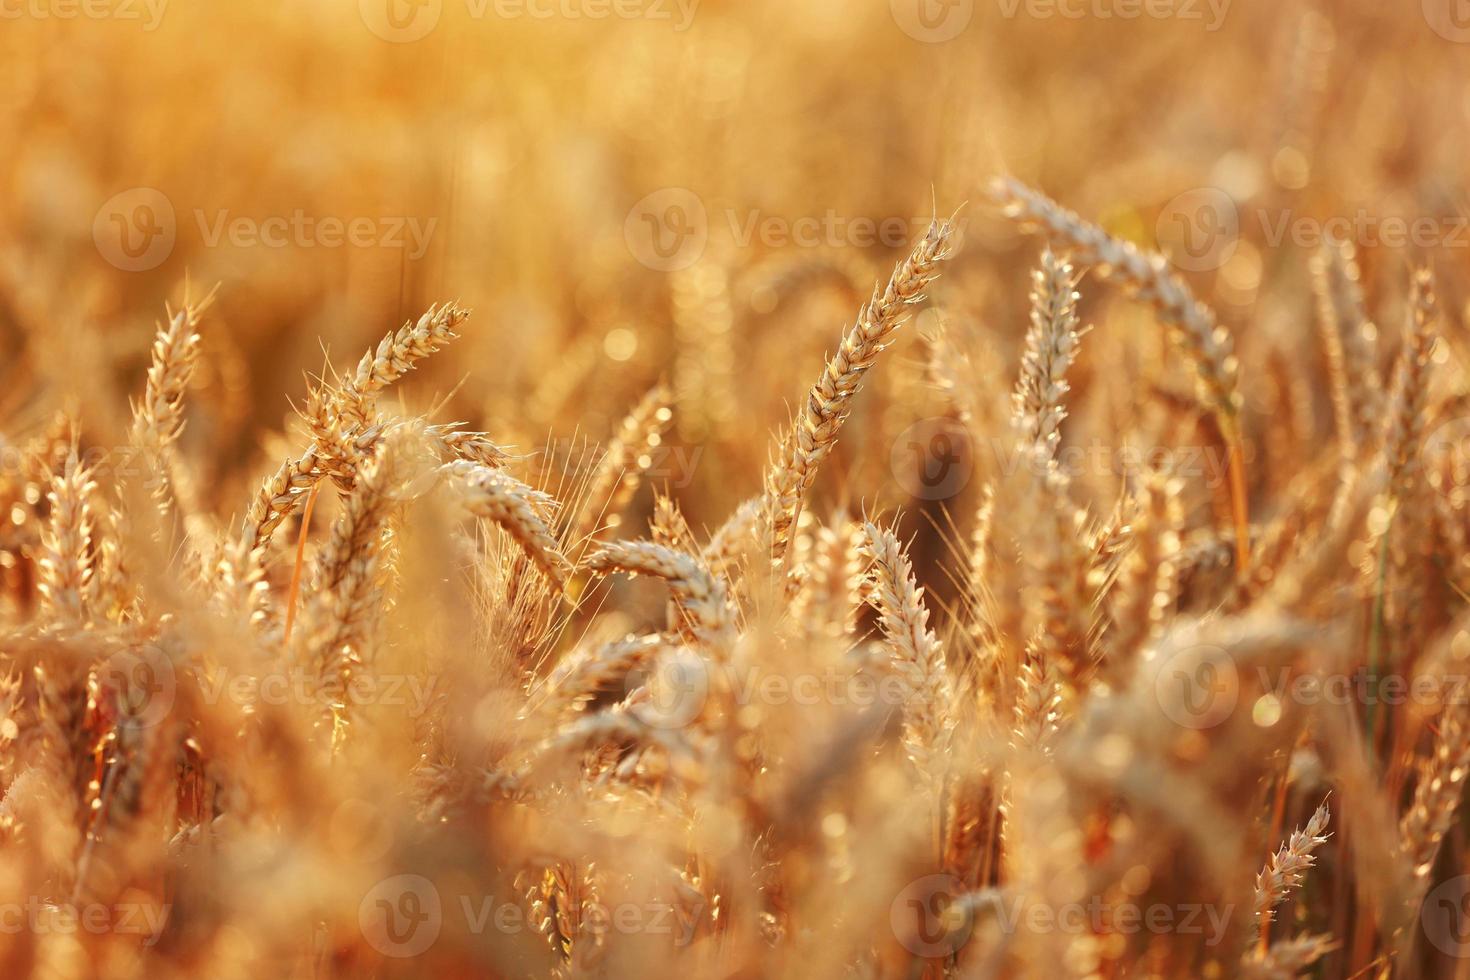 champ de blé, épis de blé dorés se balançant sous le vent. aérienne du champ de blé mûrissant le jour de l'été. l'industrie agricole en ukraine. famine dans le monde. guerre de la russie en ukraine photo